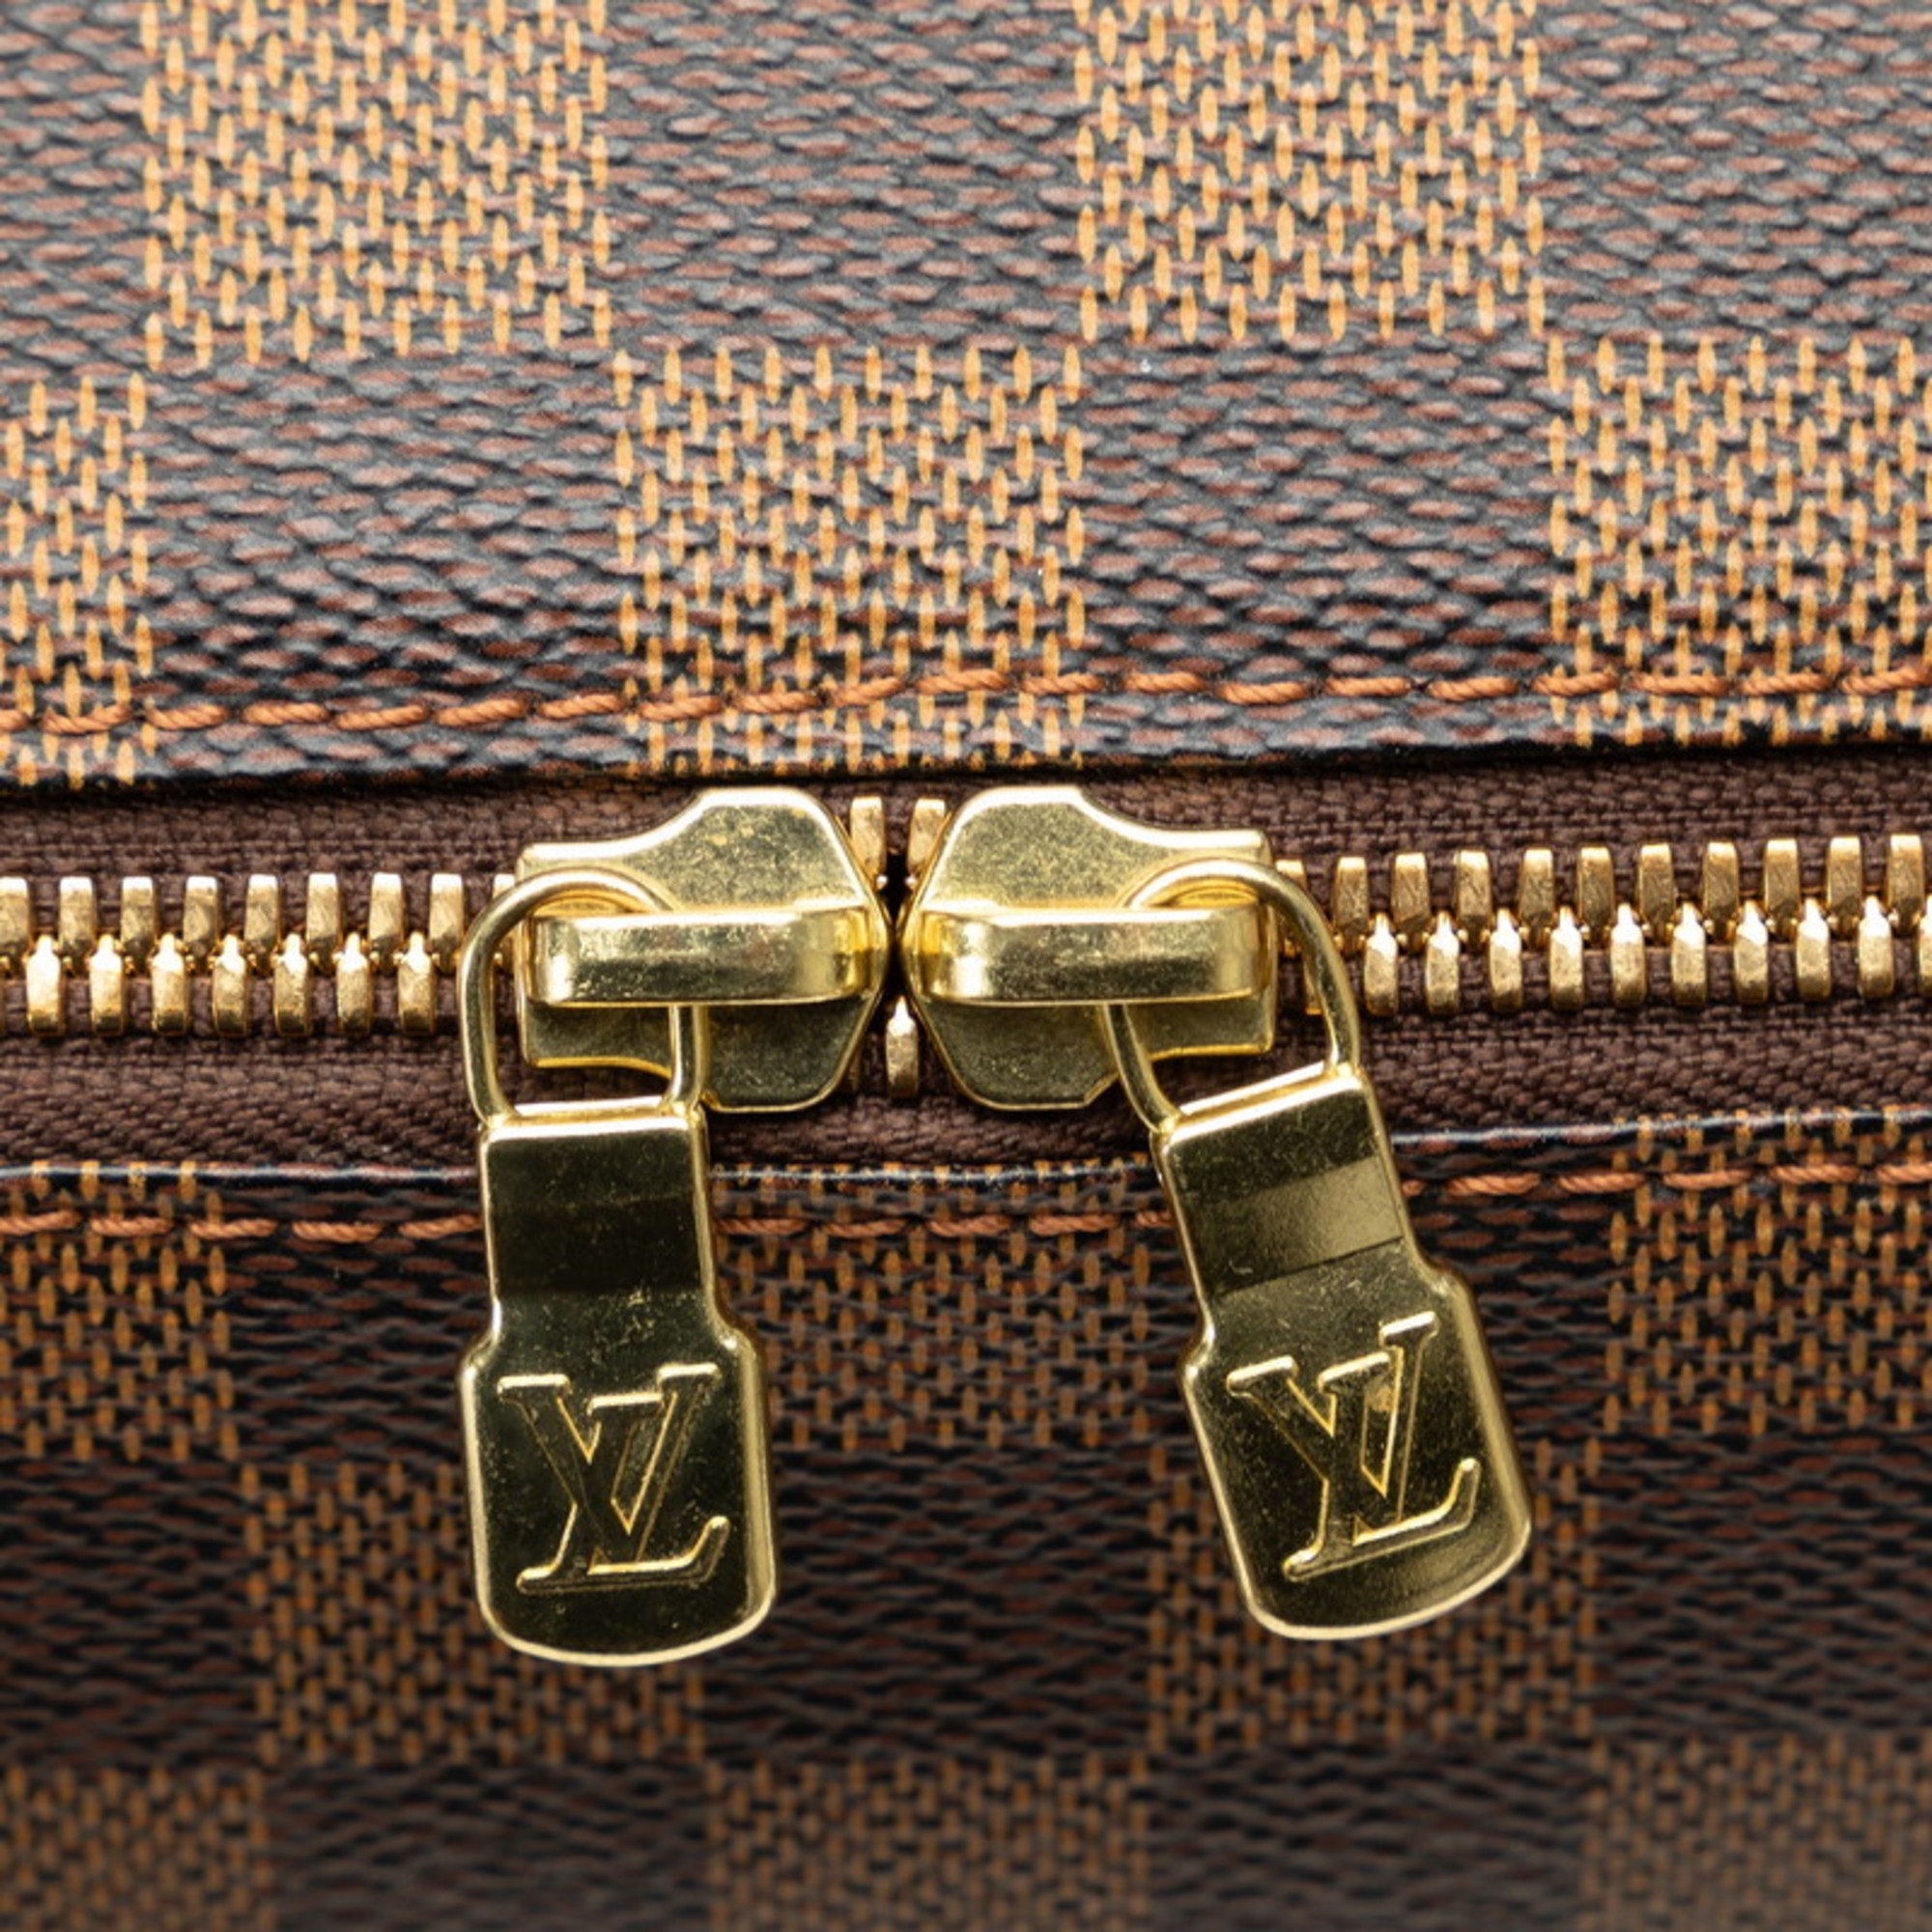 Louis Vuitton Damier Rivera MM Handbag Boston Bag N41434 Brown PVC Leather Women's LOUIS VUITTON